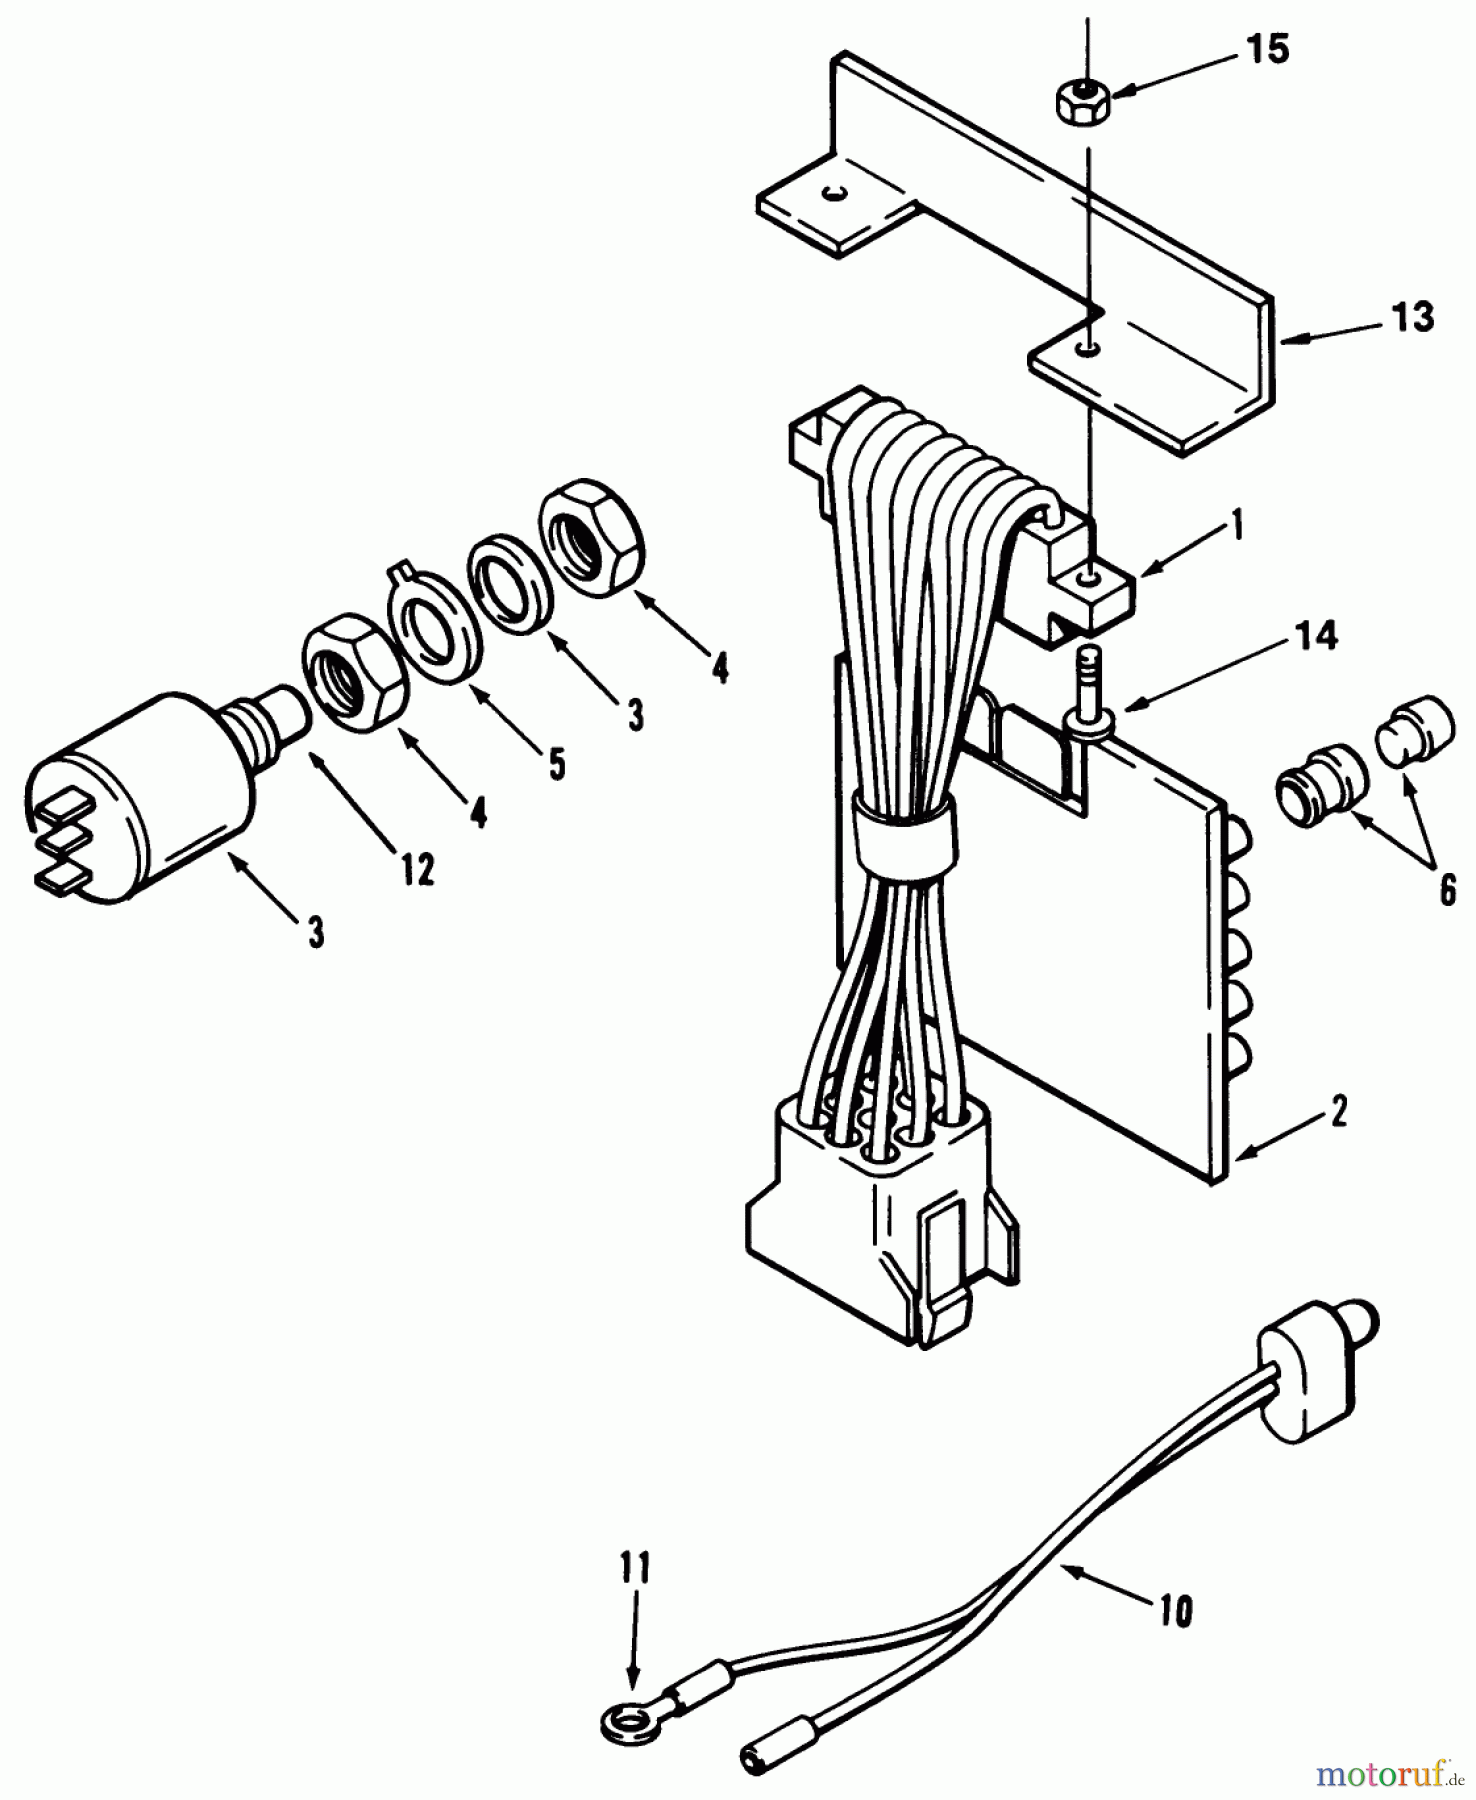  Toro Neu Mowers, Lawn & Garden Tractor Seite 1 31-16O803 (416-8) - Toro 416-8 Garden Tractor, 1991 (1000001-1999999) ELECTRICAL SYSTEM #2